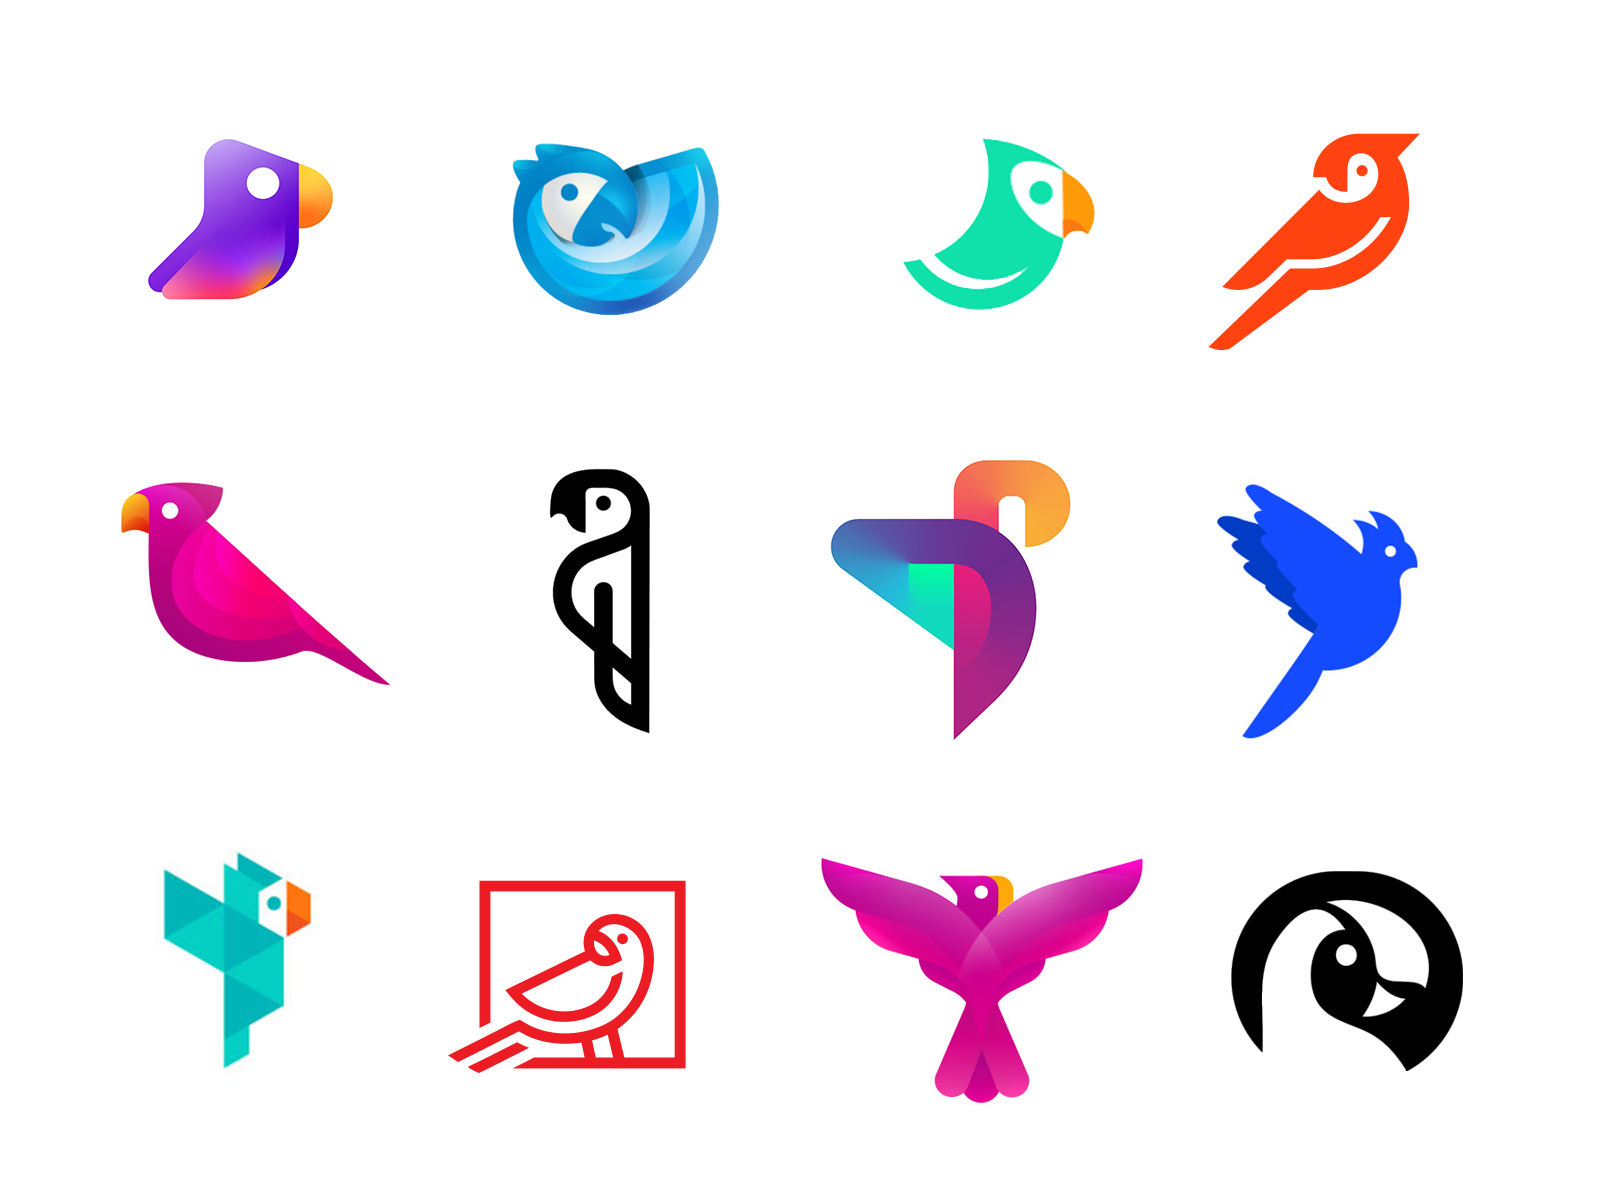 Parrot logo bird icon Royalty Free Vector Image